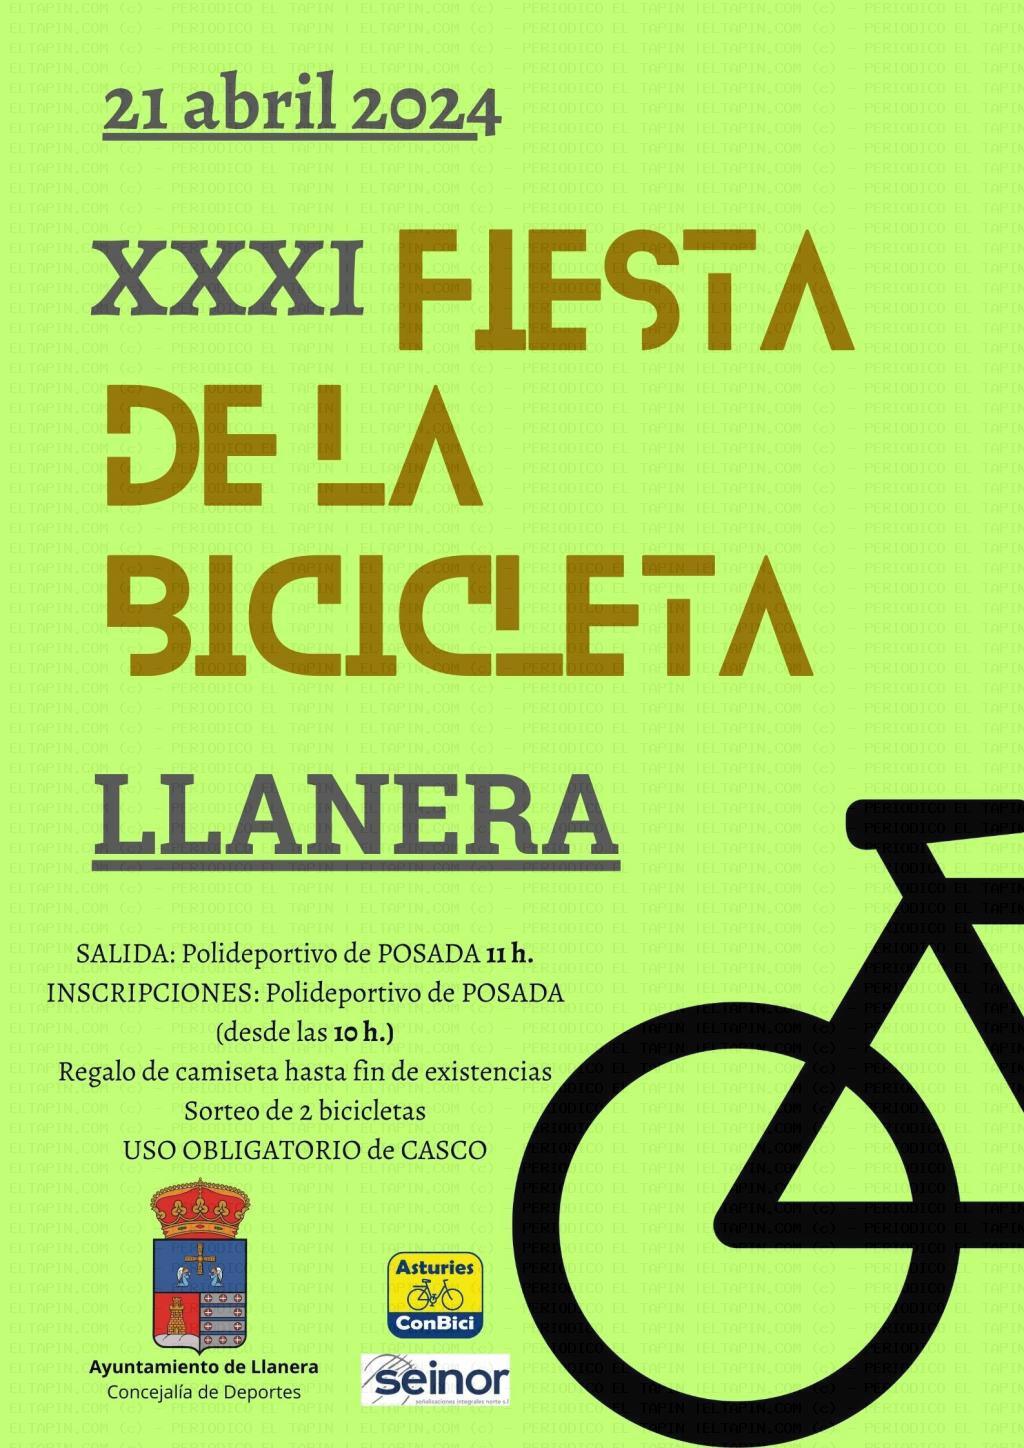 El Tapin - Llanera celebra la XXXI Fiesta de la Bicicleta el 21 de abril